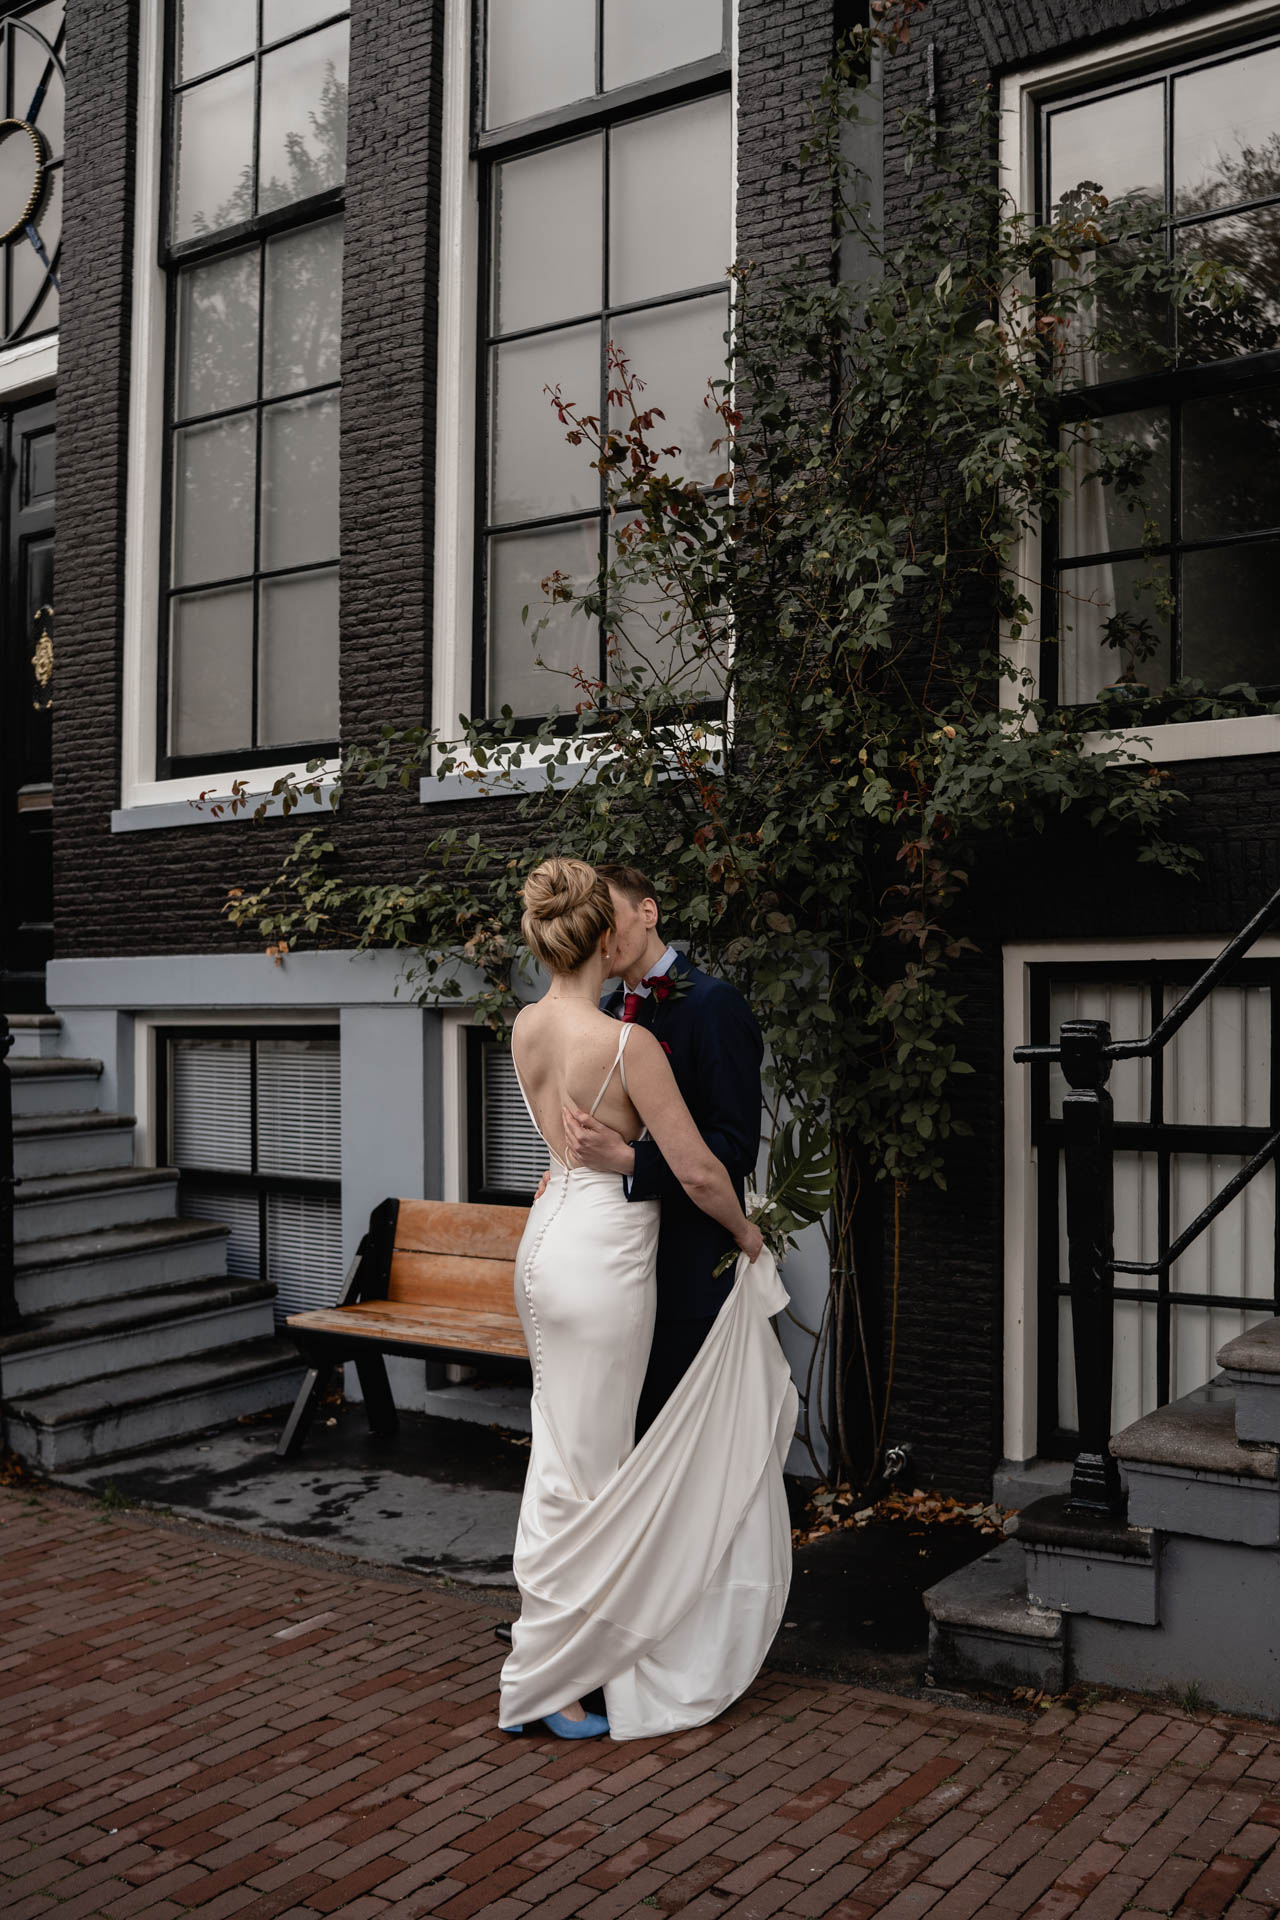 Zoenen in de straten van Amsterdam tijdens je bruiloft